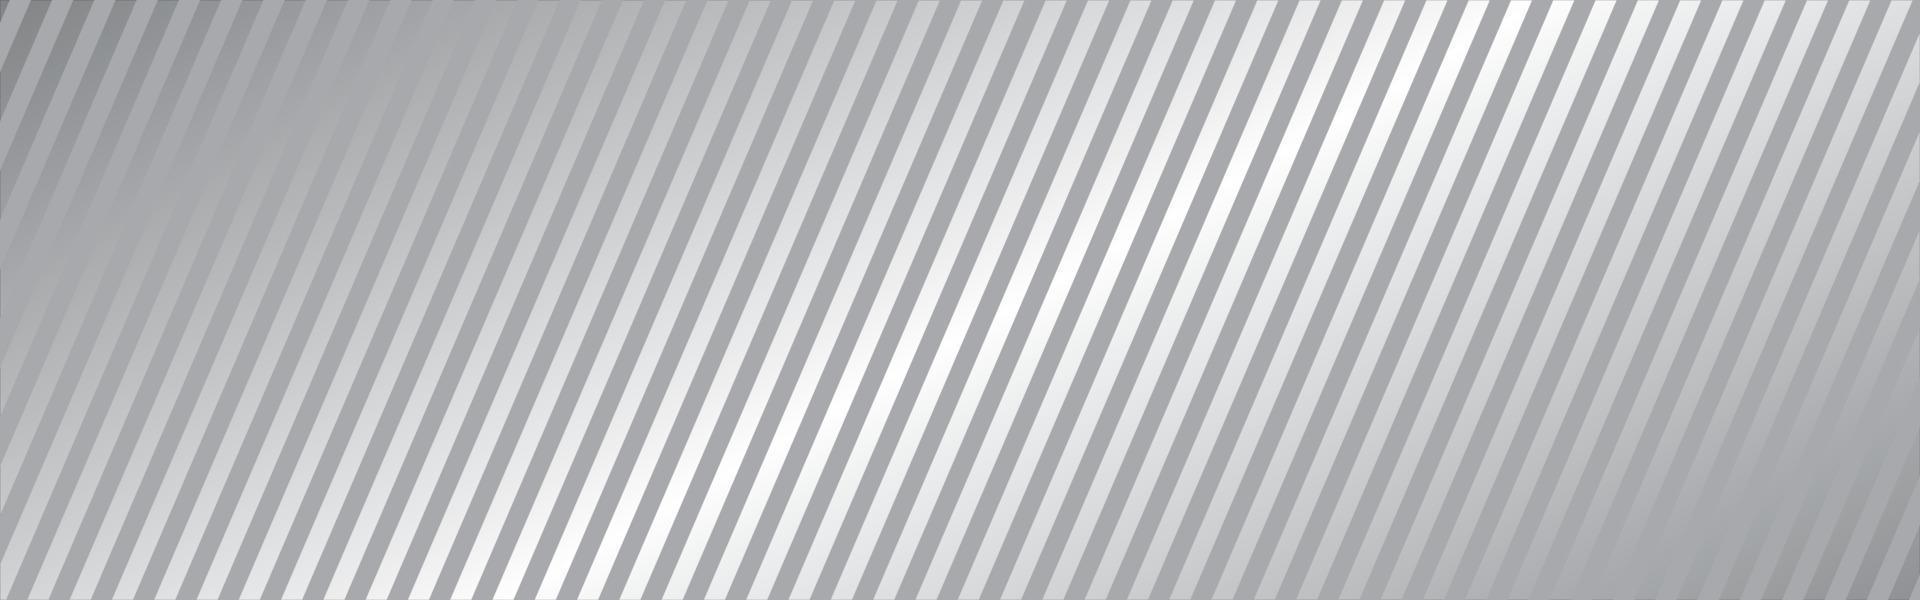 fondo largo de línea diagonal. textura de rayas blancas. elemento de diseño recto gris. banner neutral abstracto. decoración de material de tela. concepto de líneas dinámicas. plantilla de portada. ilustración vectorial vector